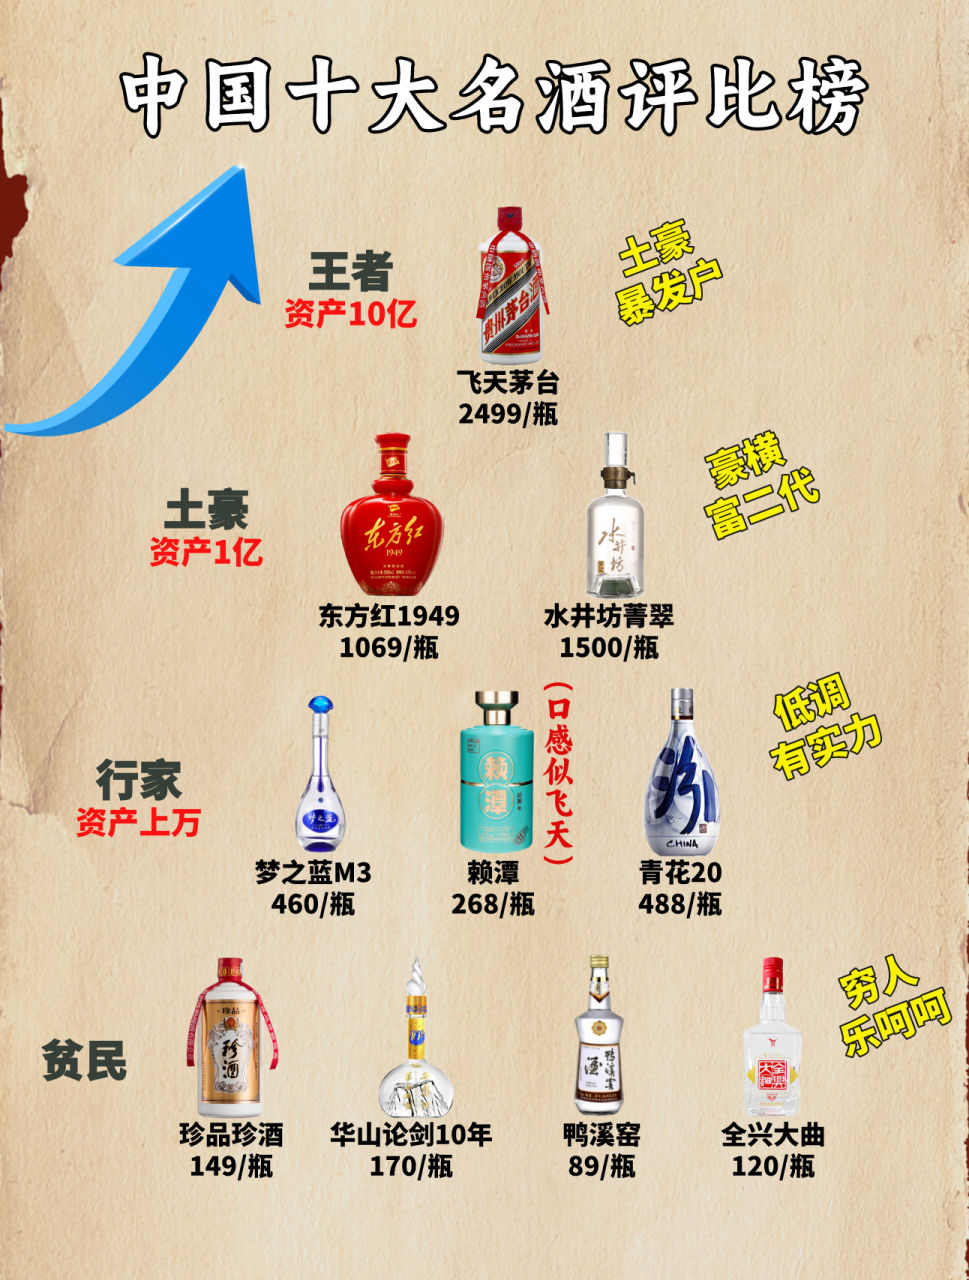 中国十大名酒排行榜现在出炉,看看你喝的在哪一层?